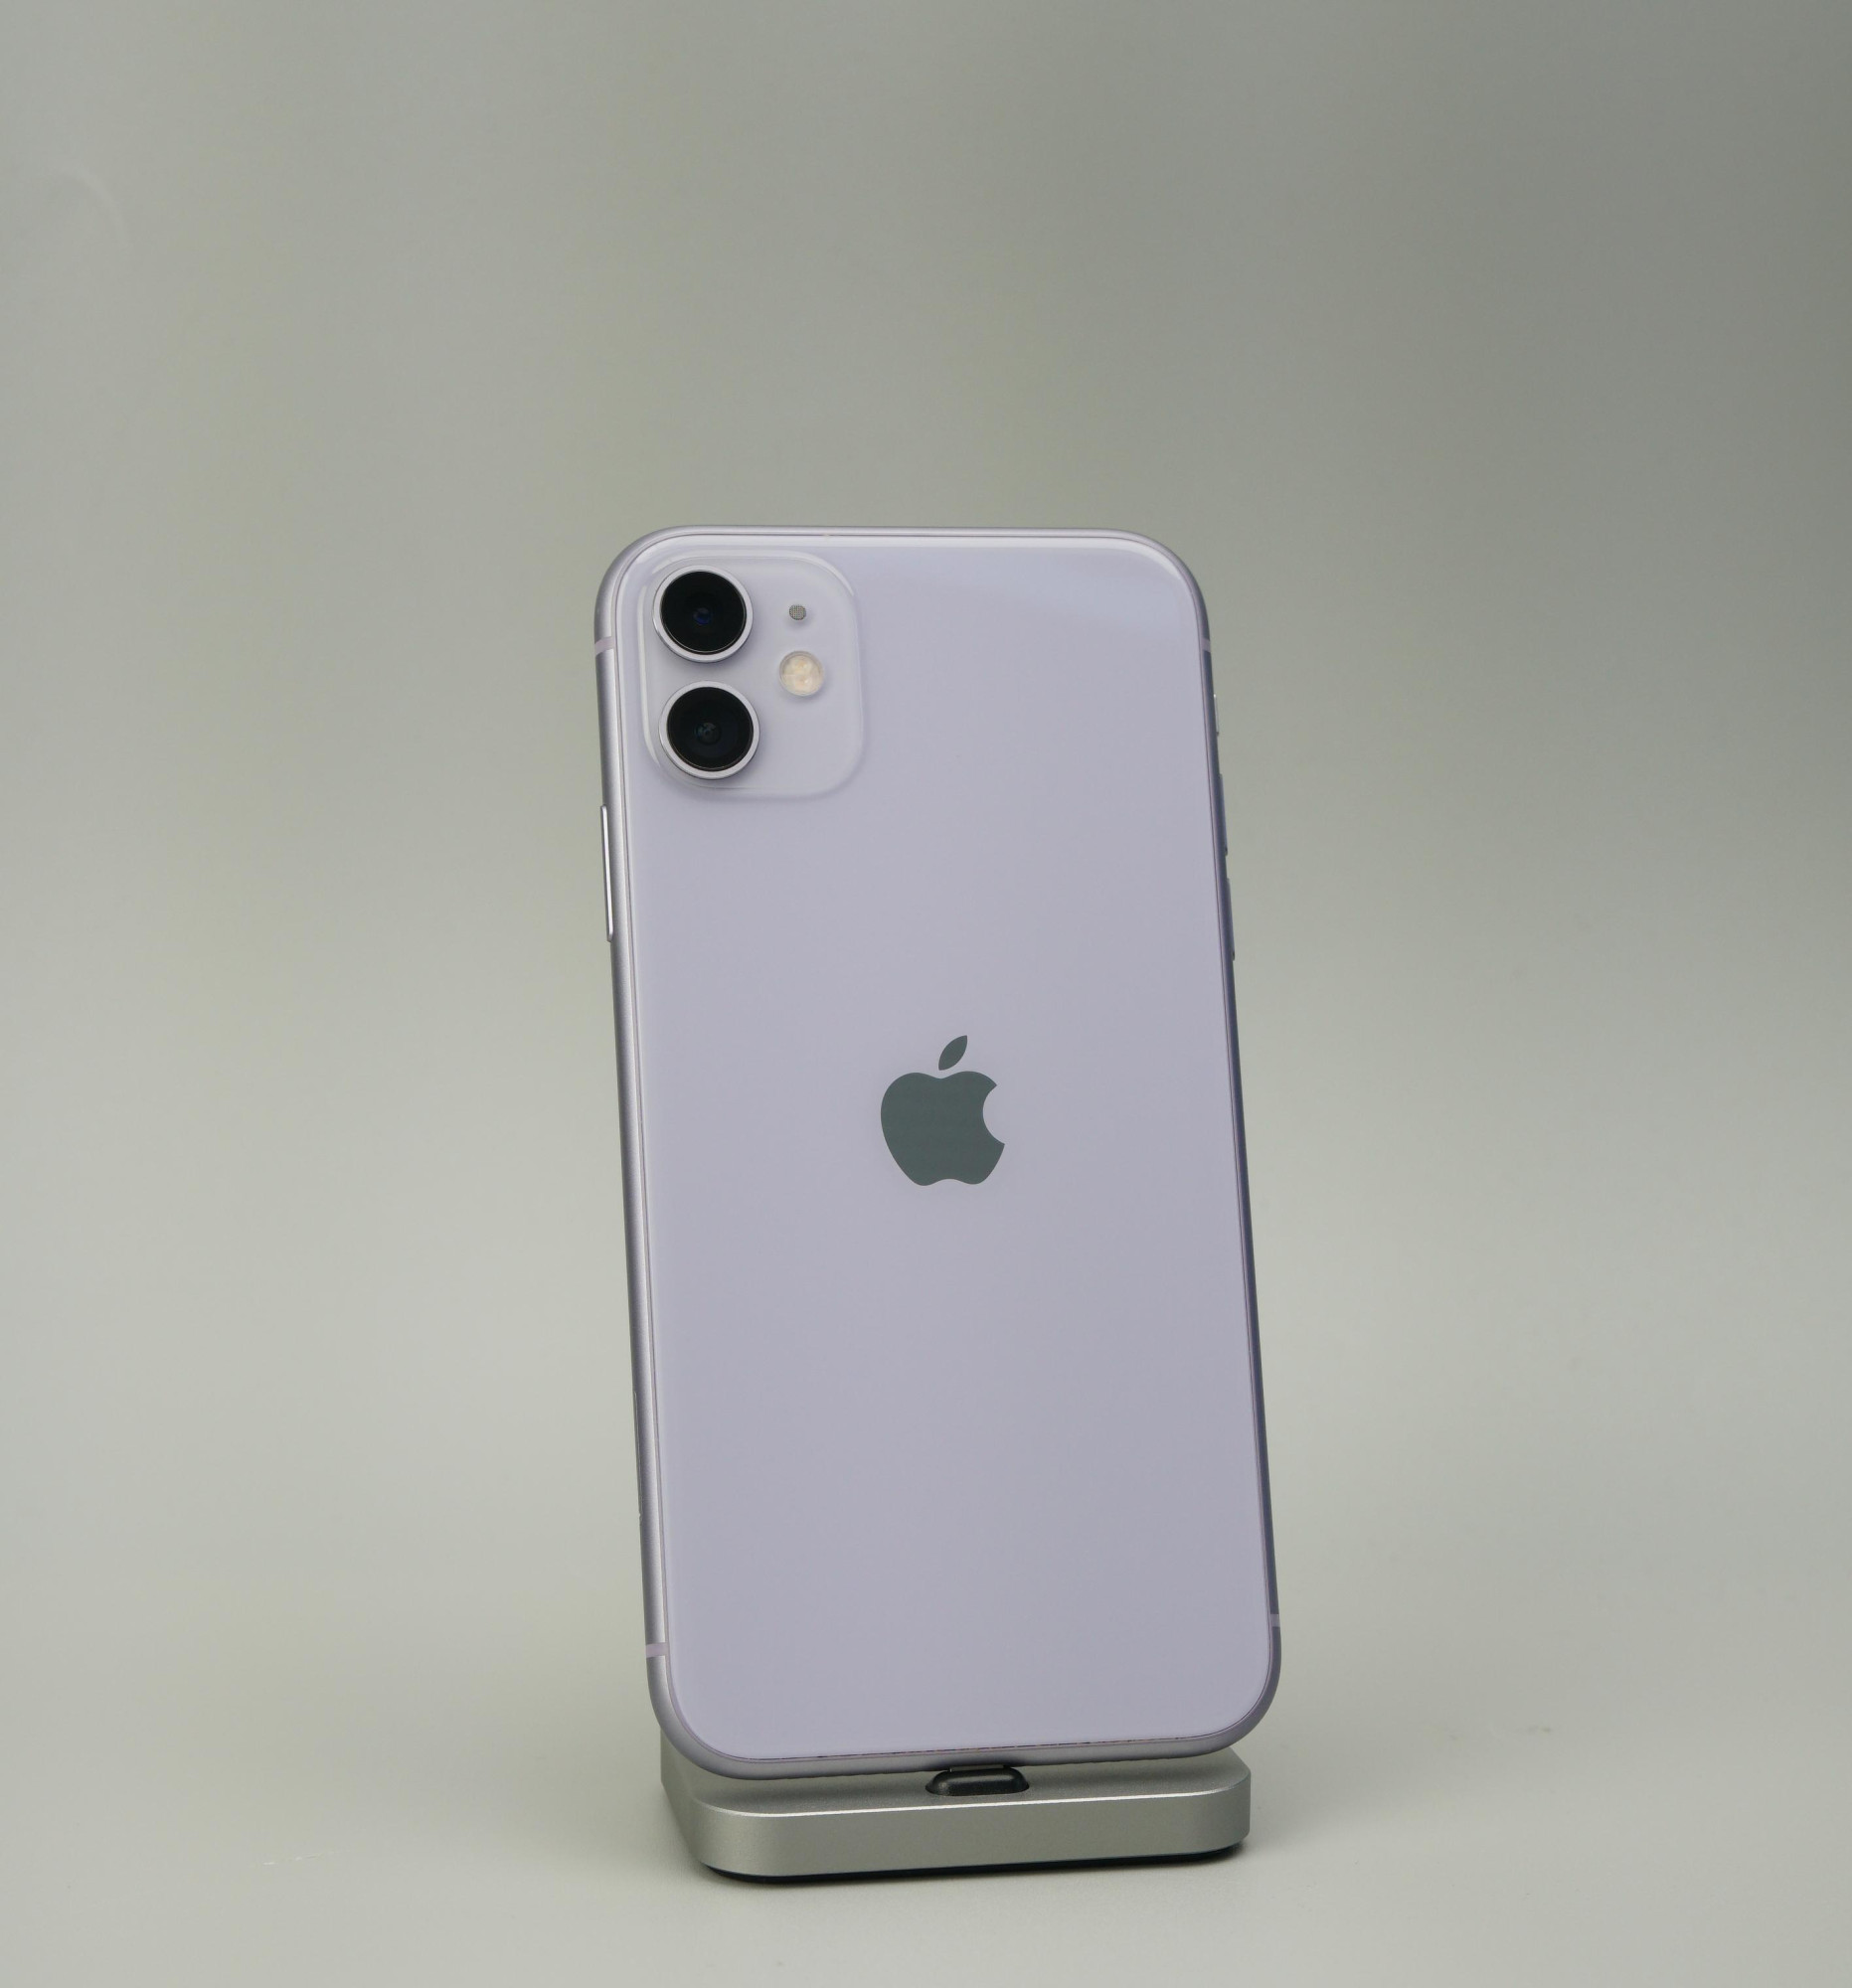 Apple iPhone 11 128GB Purple (MWLJ2) 1